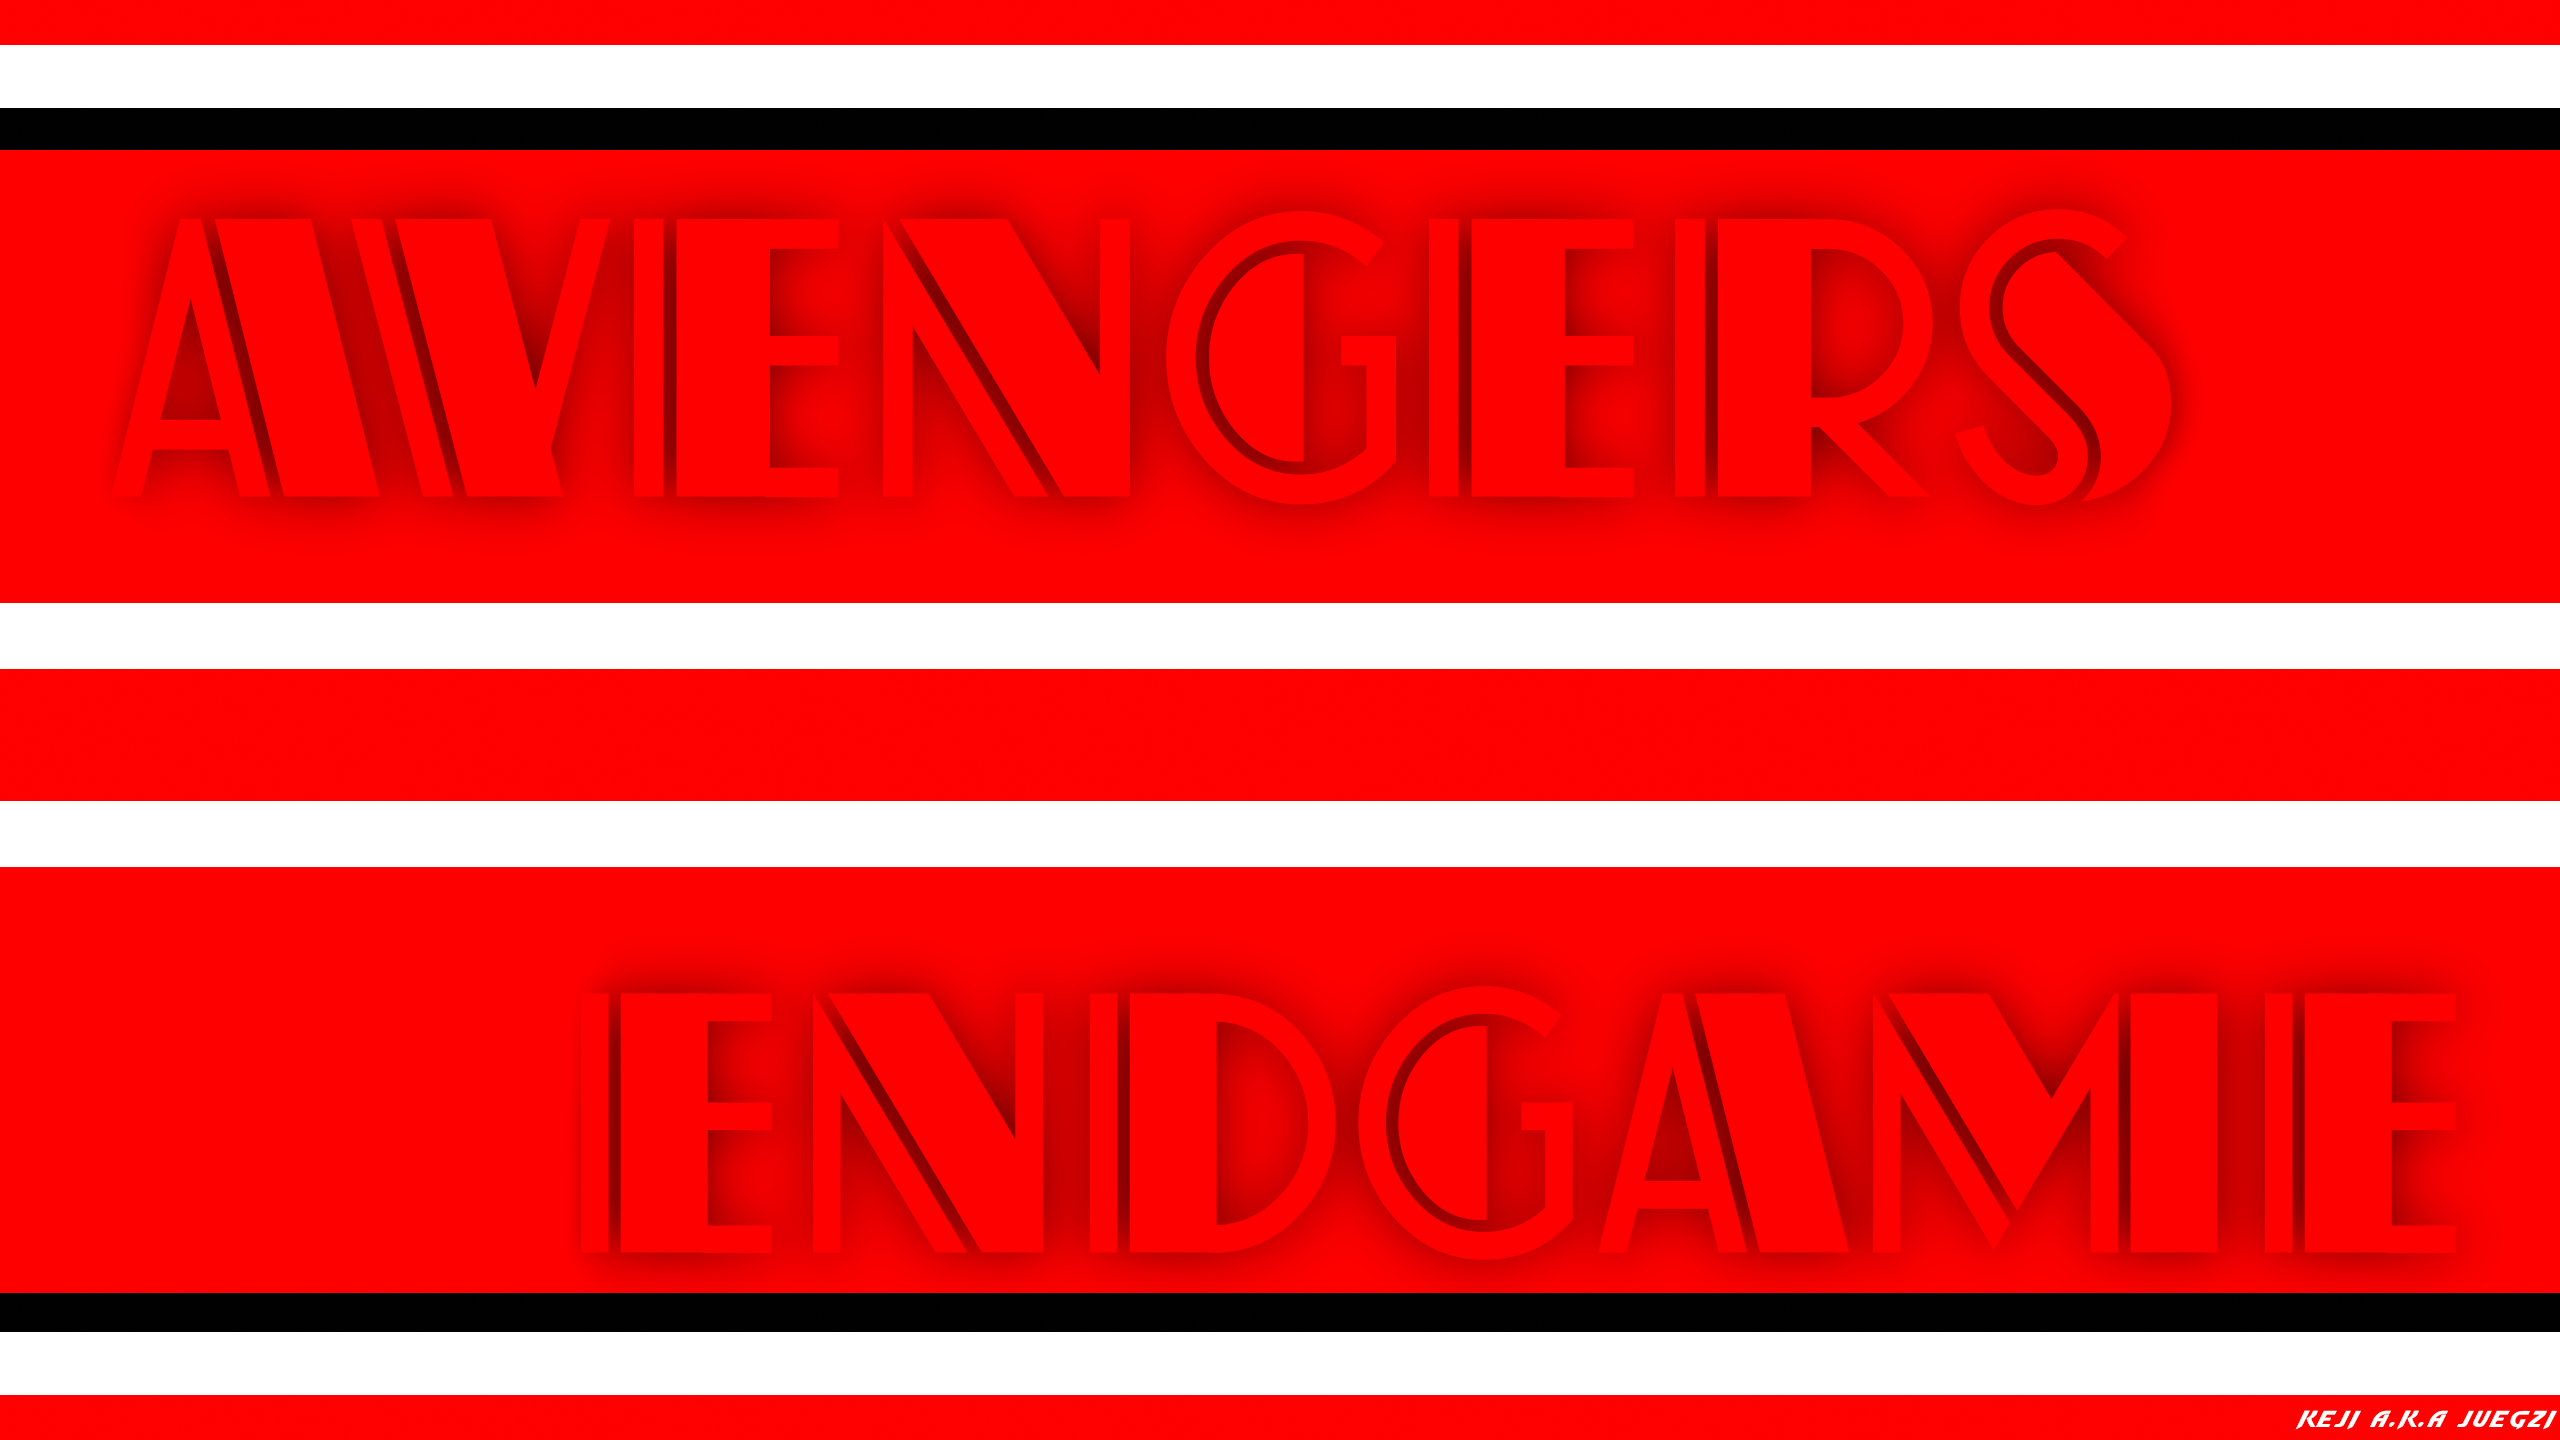 Artistic Avengers Endgame Red 2560x1440